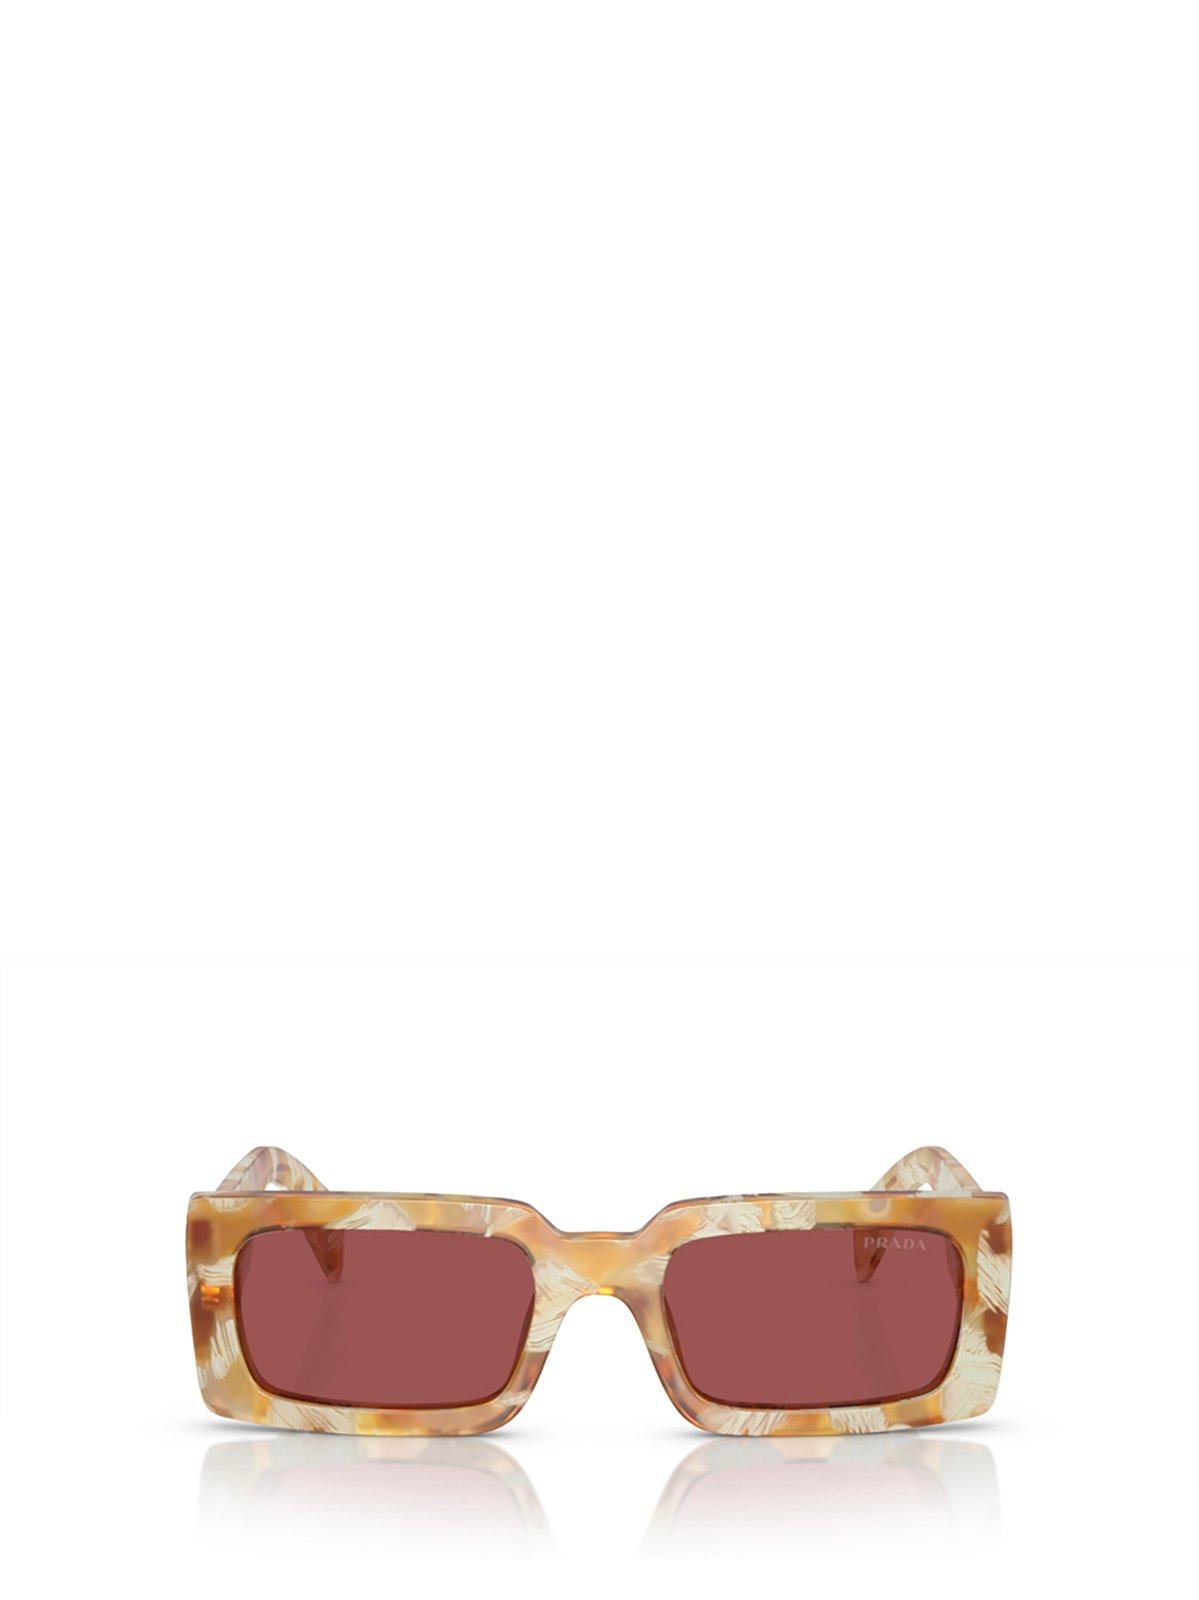 Prada Rectangular-frame Sunglasses Sunglasses In 19n08s Desert Tortoise